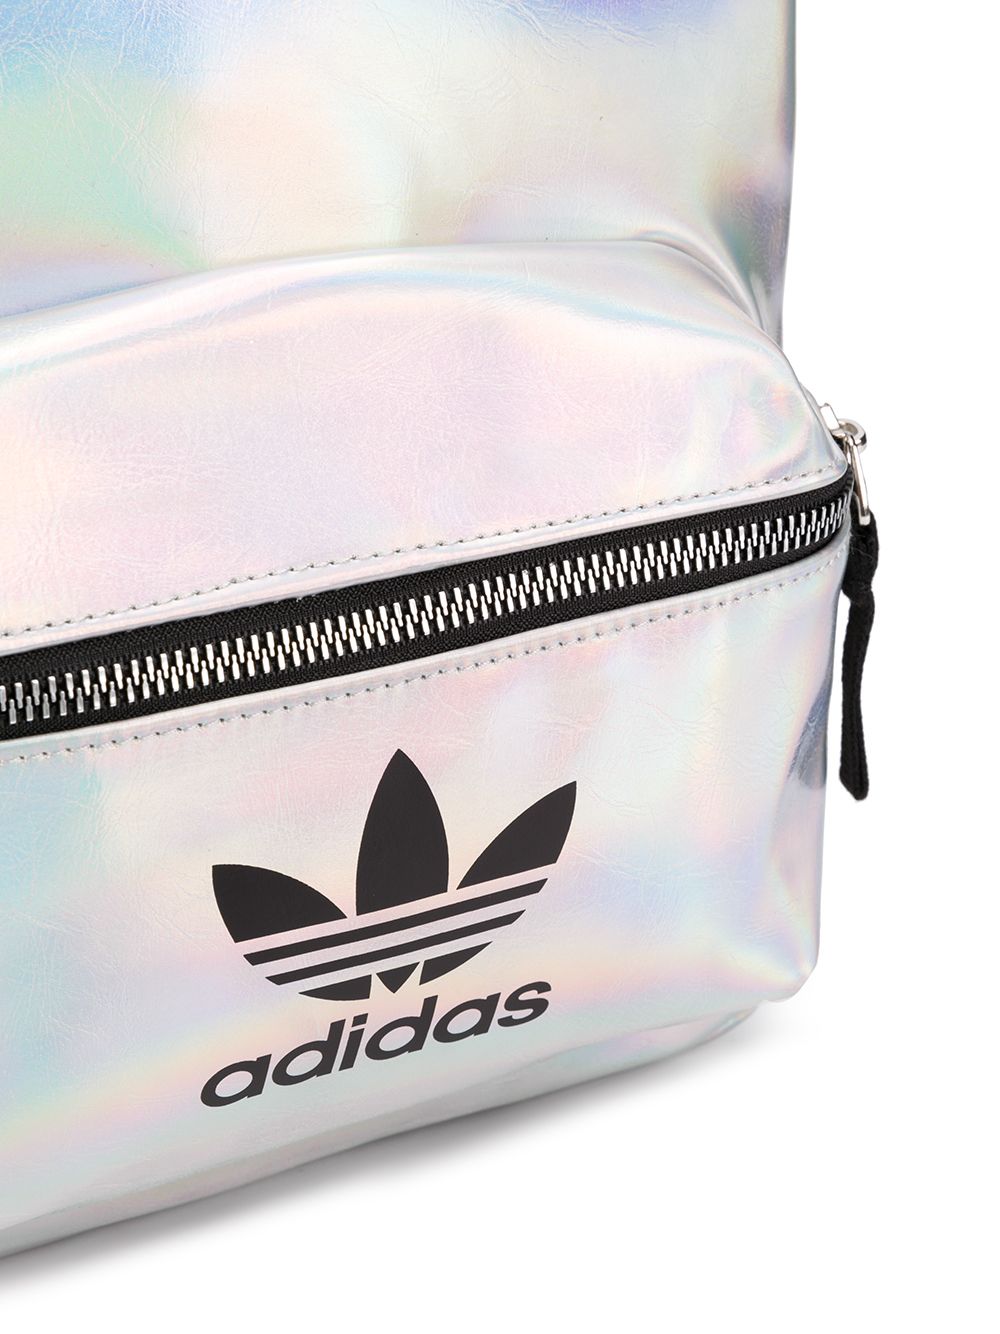 фото Adidas originals рюкзак с логотипом